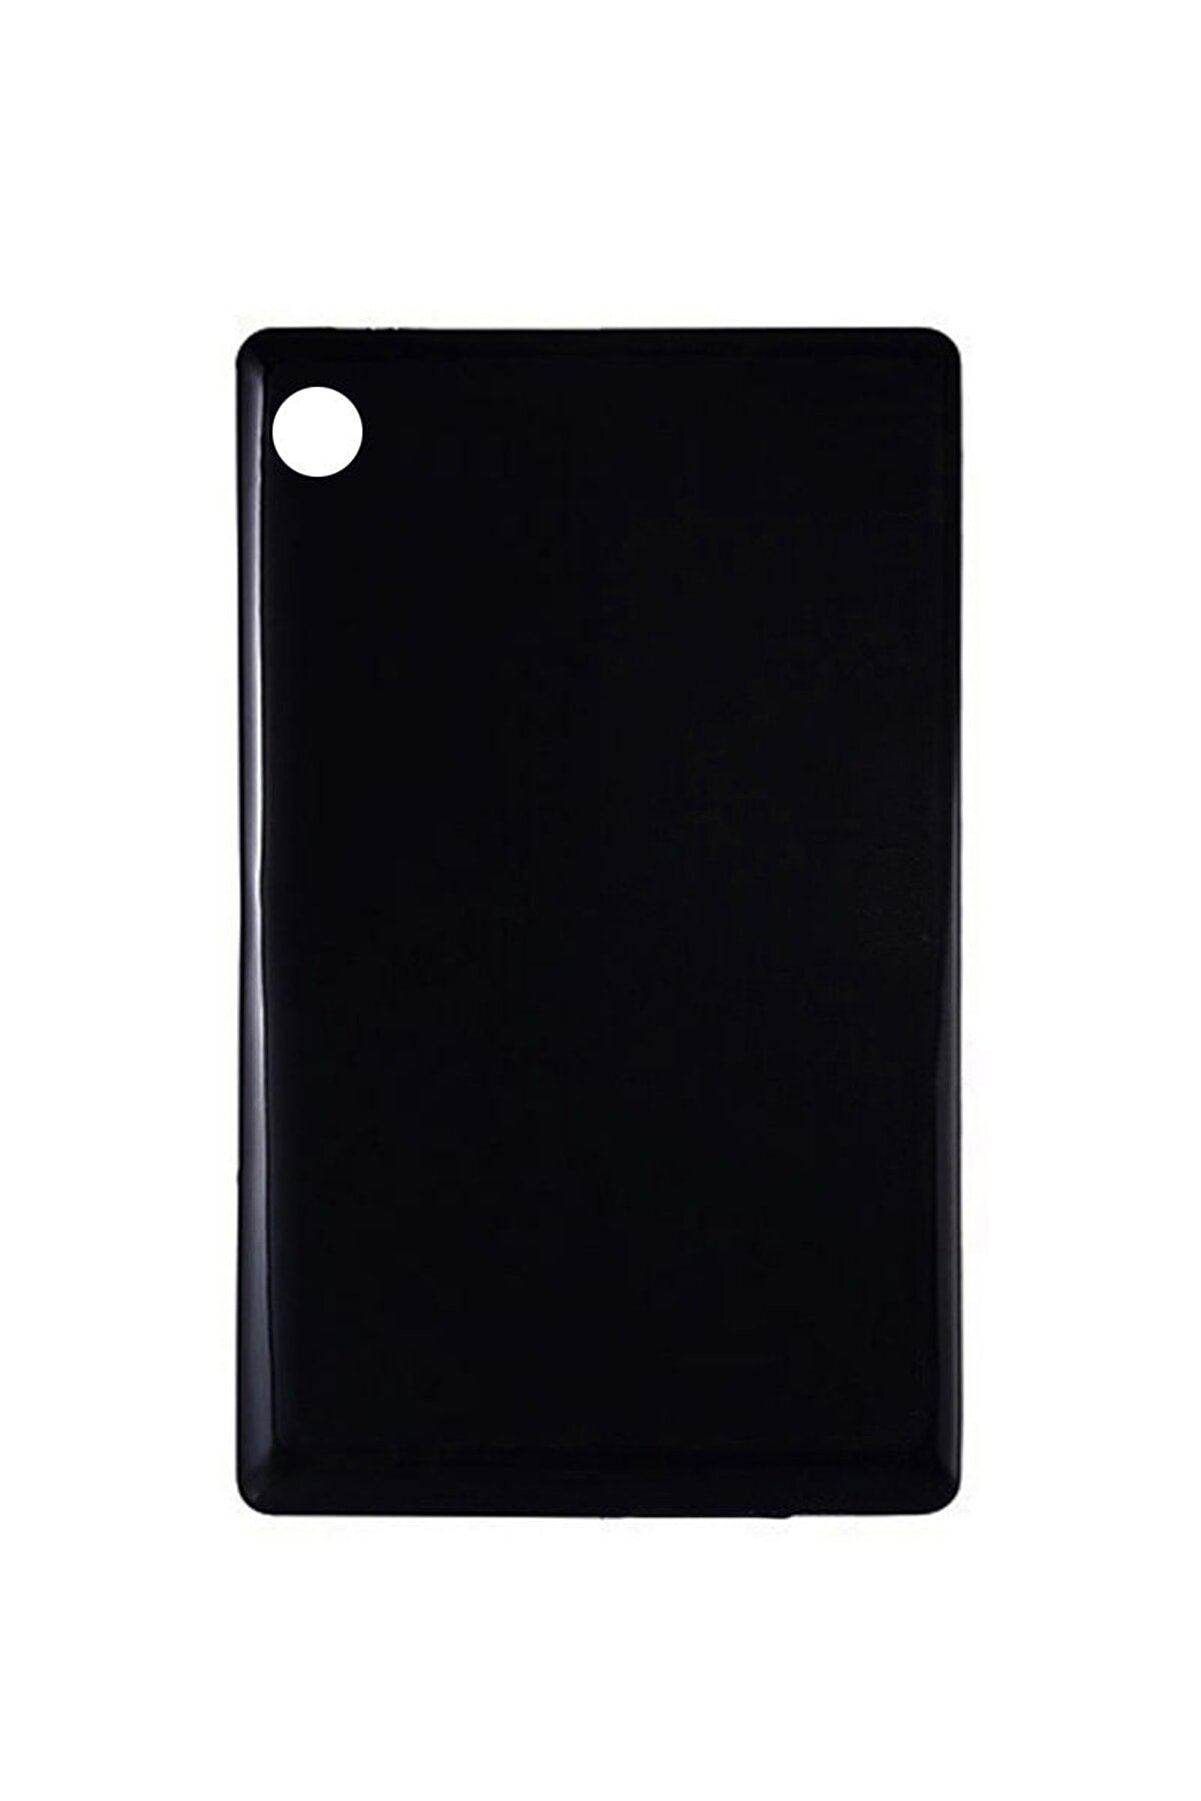 Microcase Lenovo Tab M8 Tb-8505f Tb-8505x Tb-8505ı 8.0 Inch Silikon Kılıf - Siyah